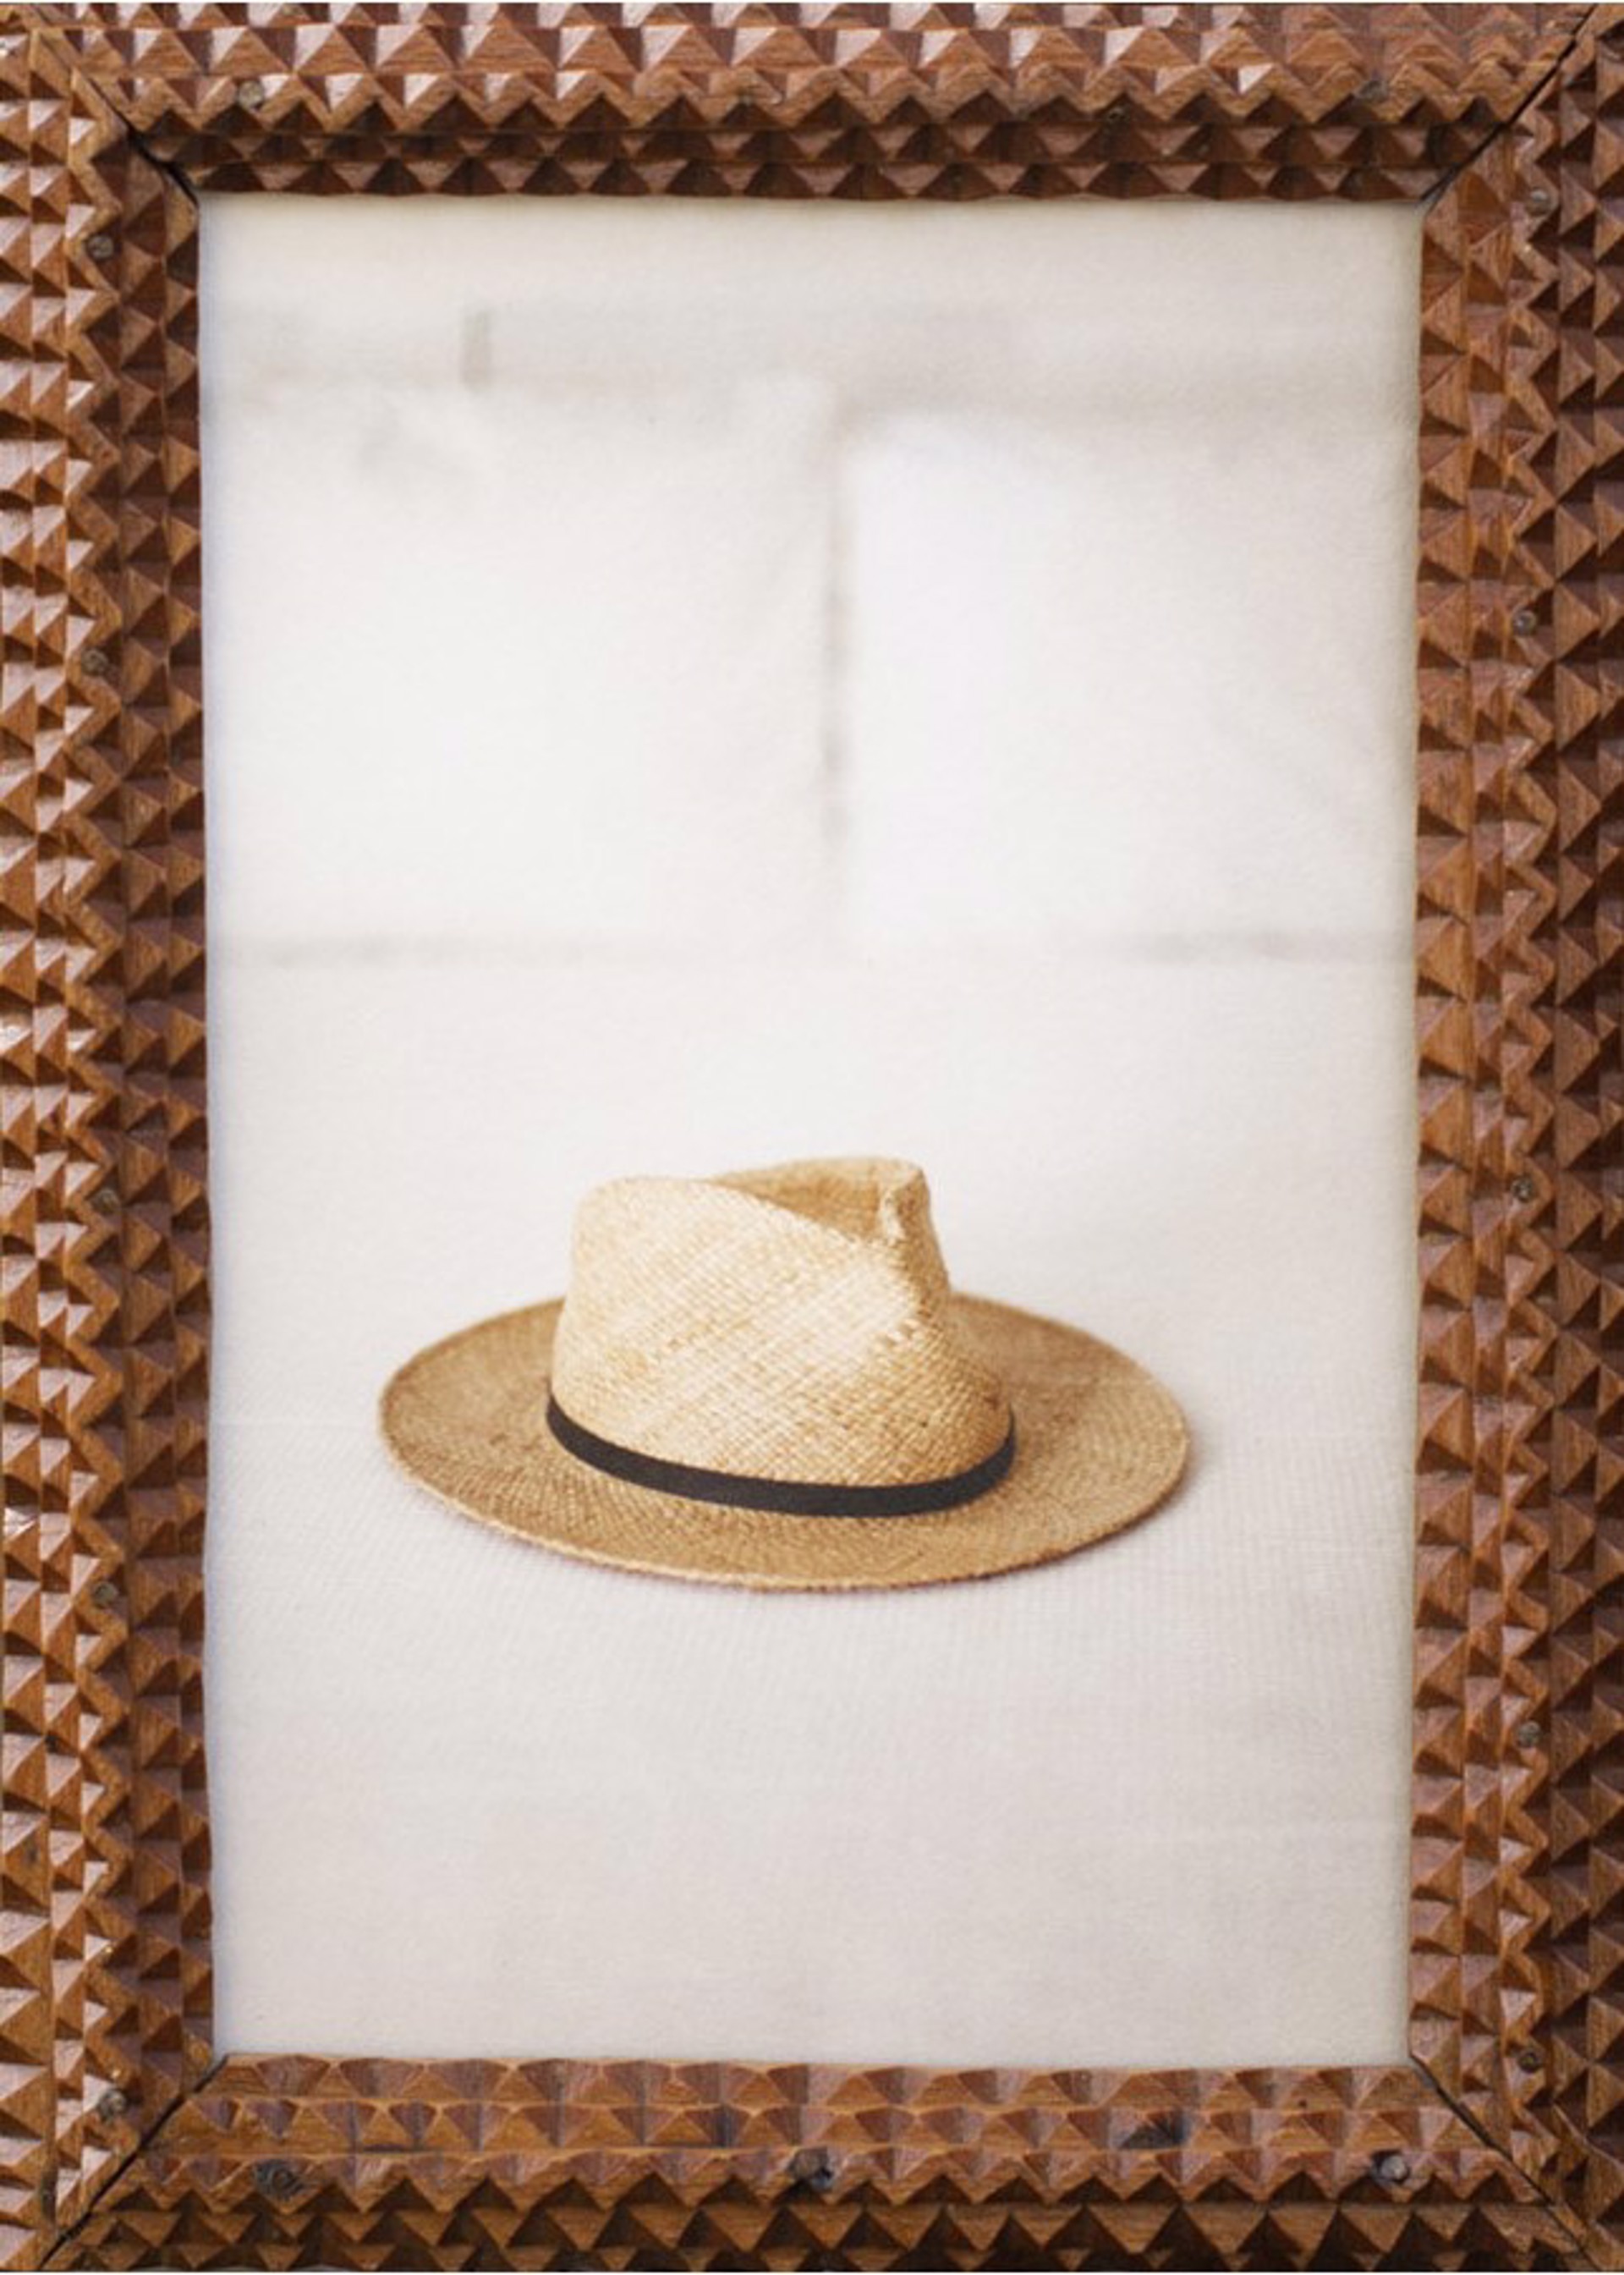 Hat on a Bed by Jefferson Hayman